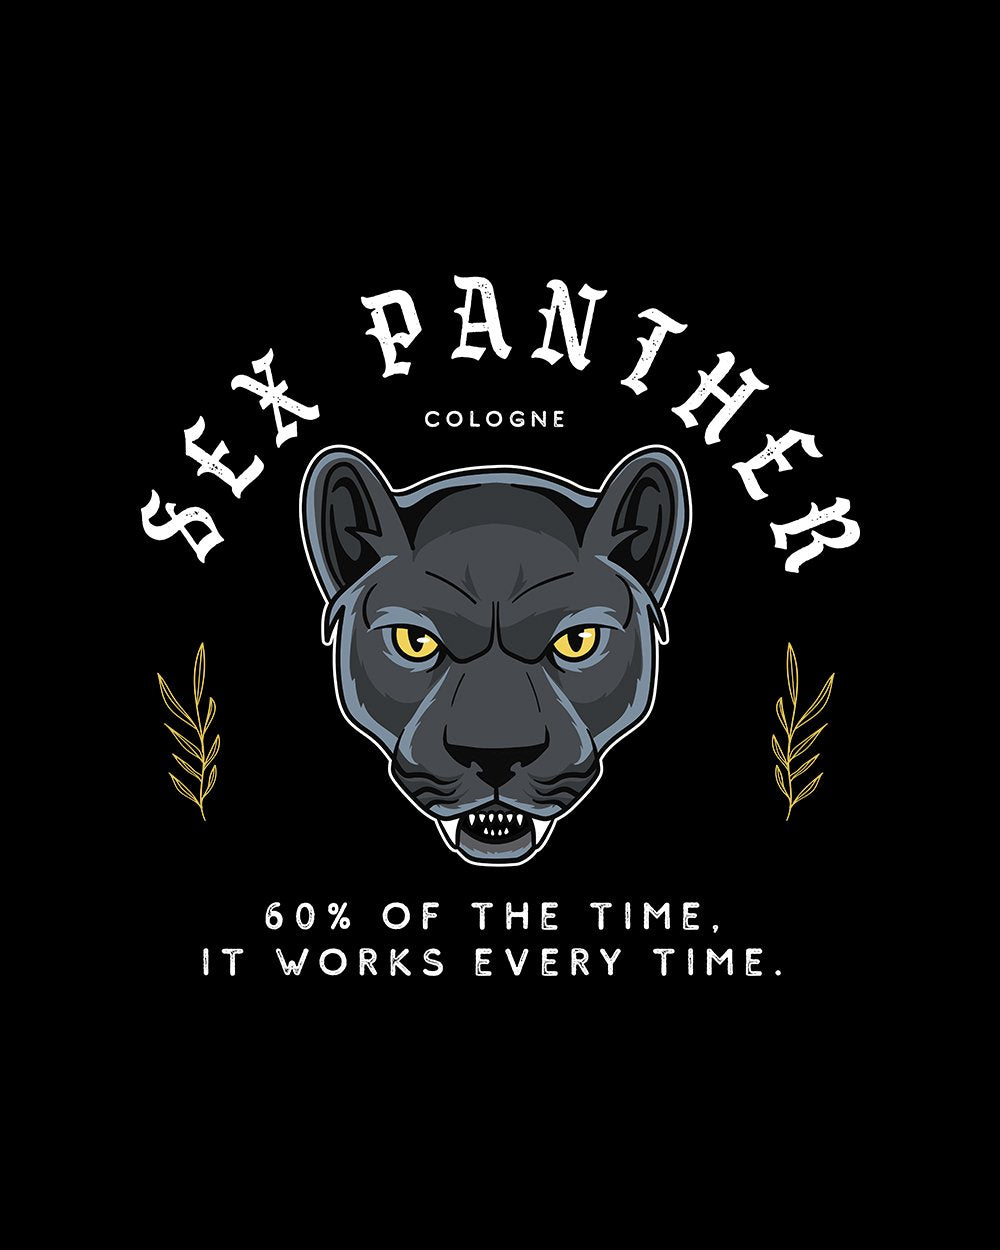 Sex Panther Long Sleeve Australia Online #colour_black